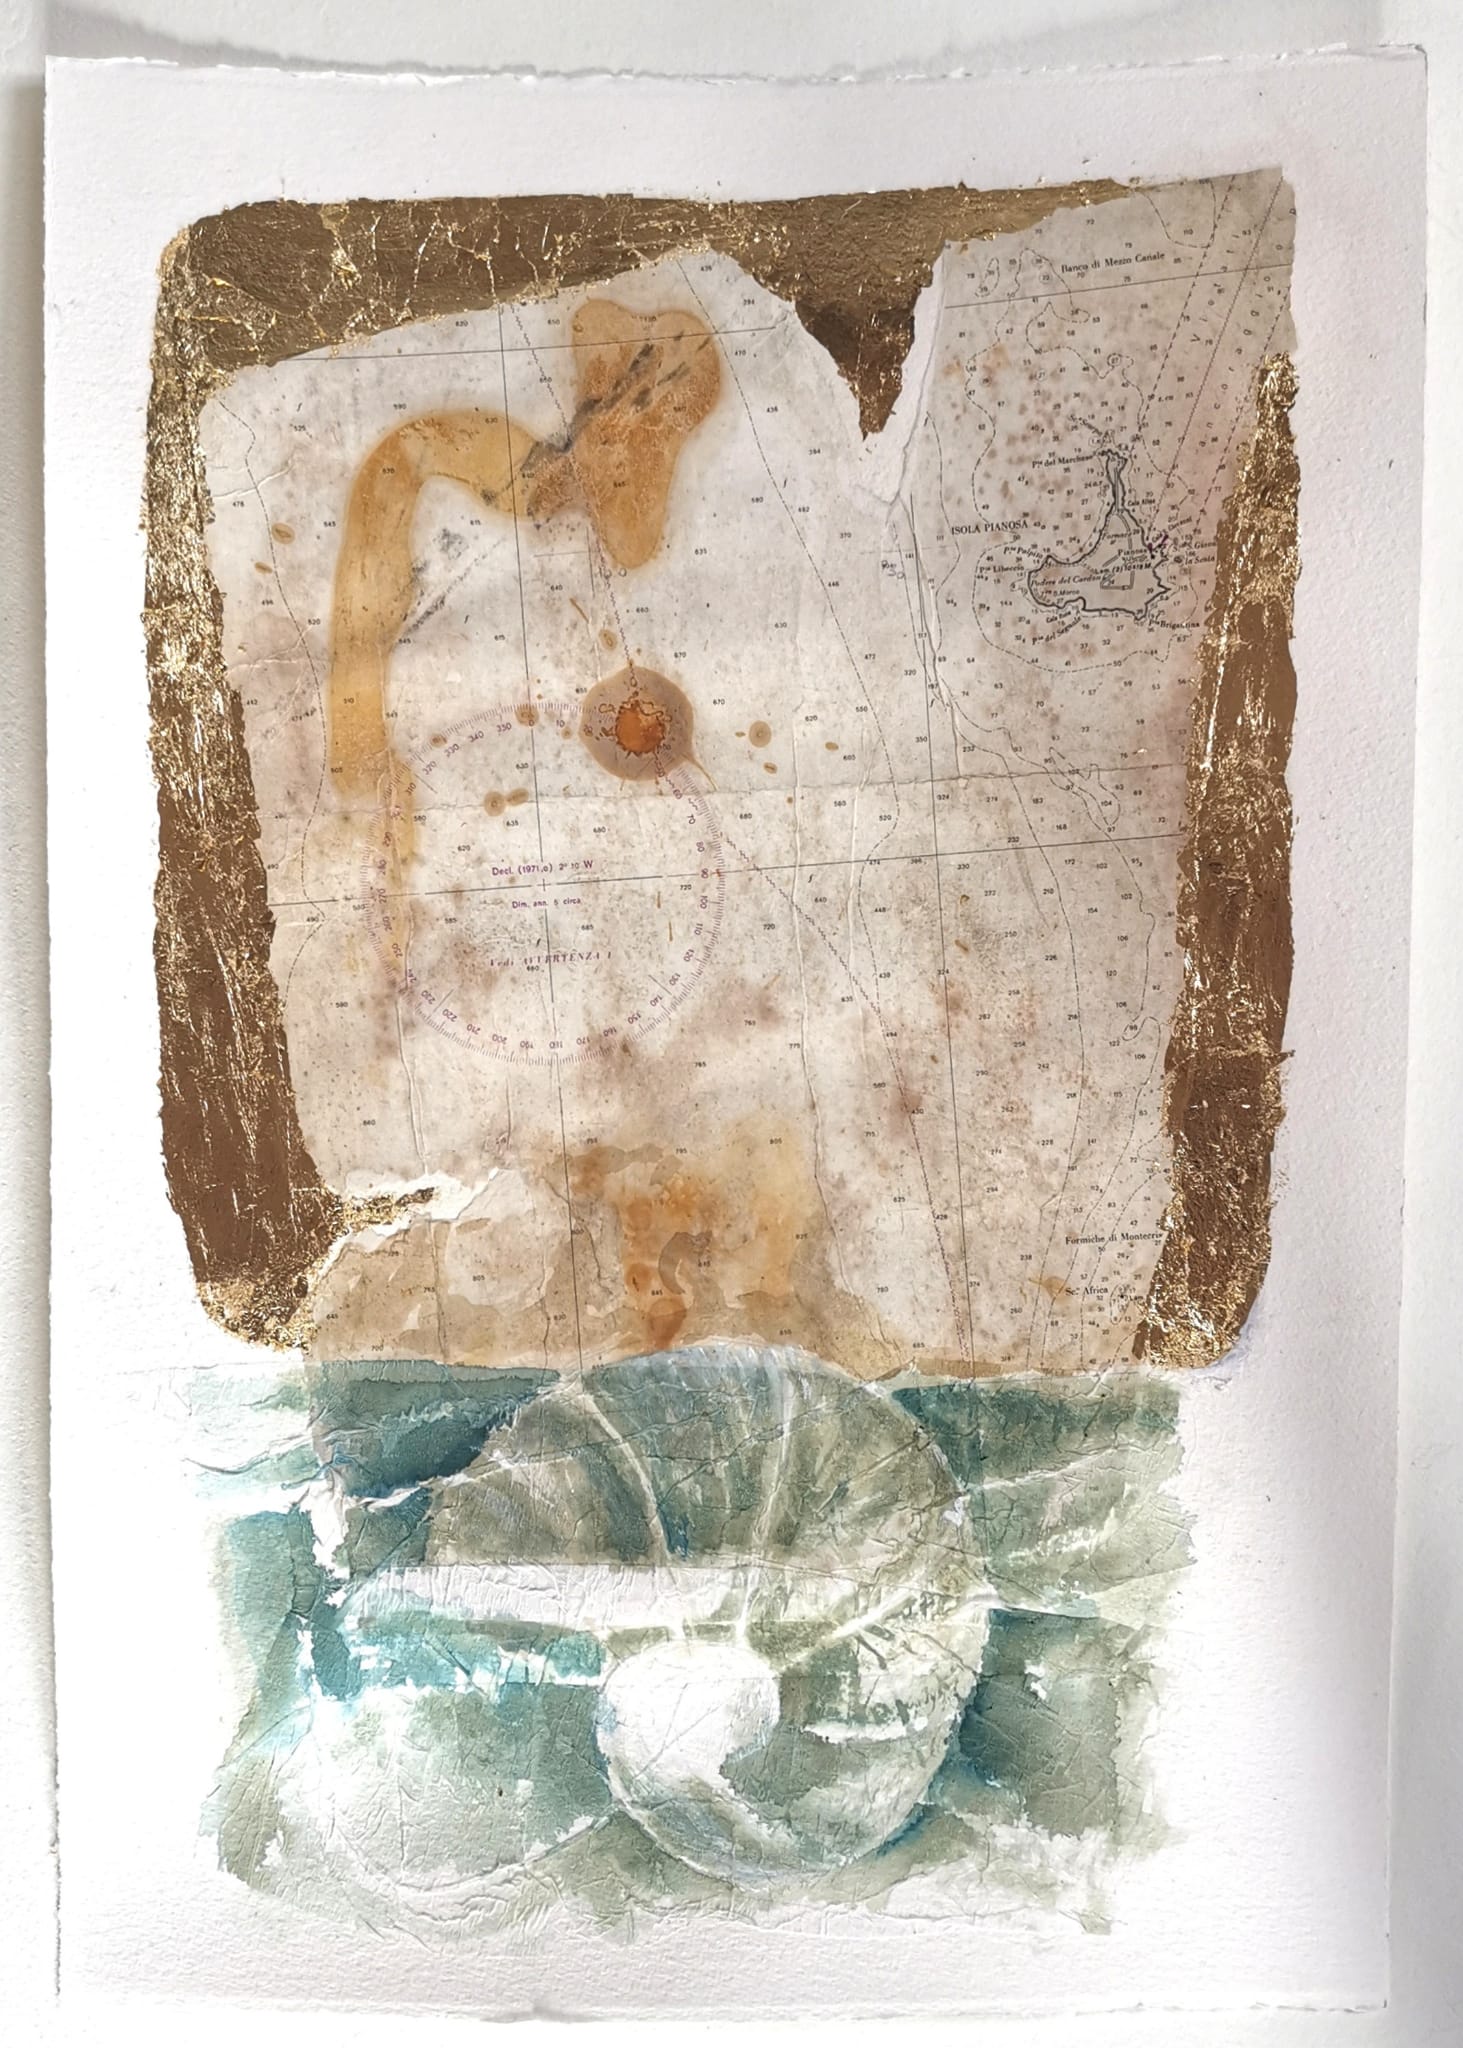 L'immagine mostra un'opera dell'artista Concetta de Pasquale: L'opera è una sorta di carta nautica a in toni seppia con dettagli astratti, e sotto di essa l'immagine stilizzata di una conchiglia in toni azzurro-grigi